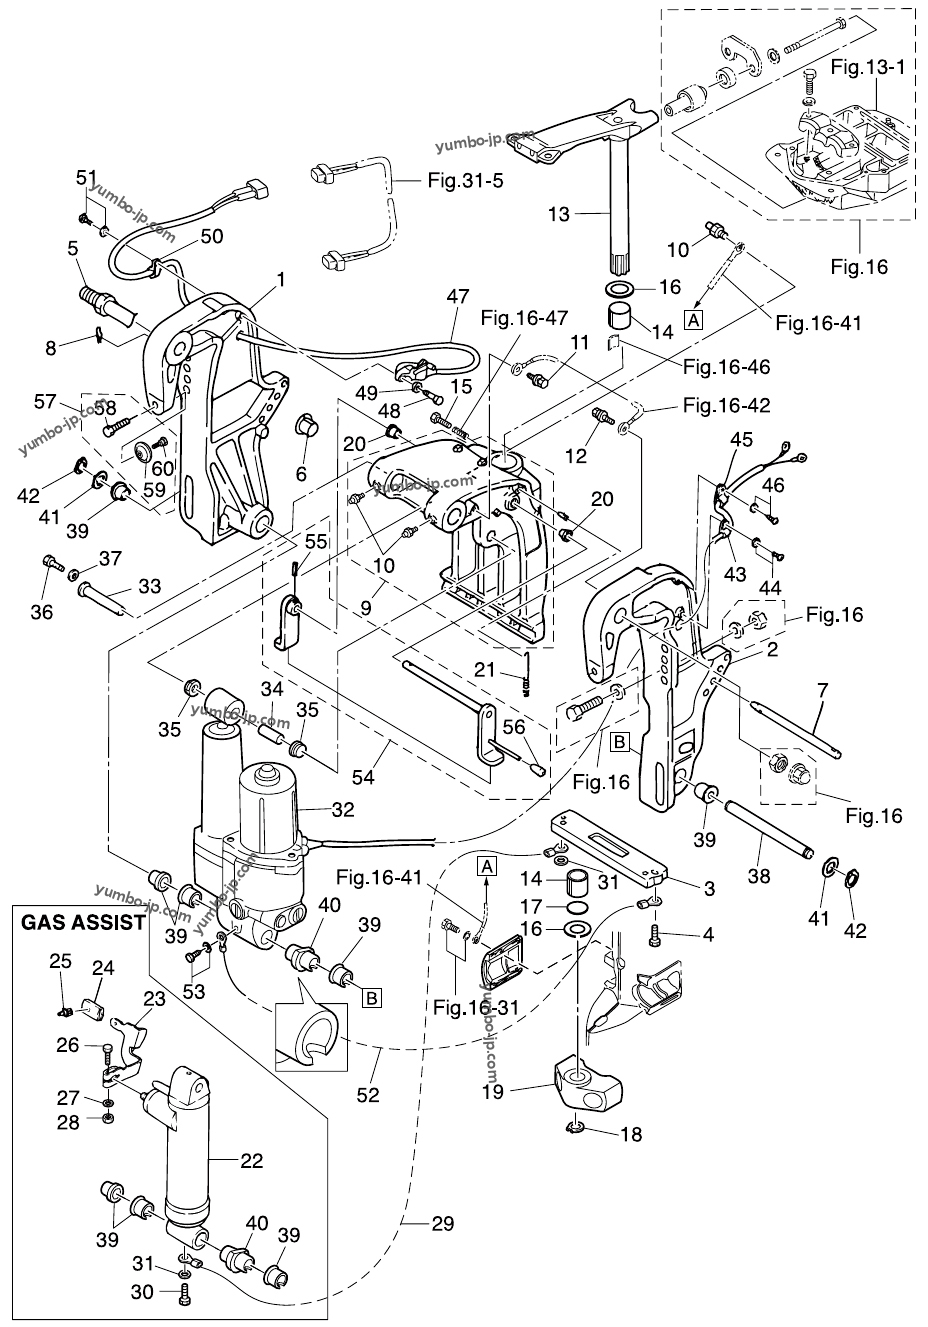 Крепления (2) Устройство усилителя подъёма (изменение угла) мотора